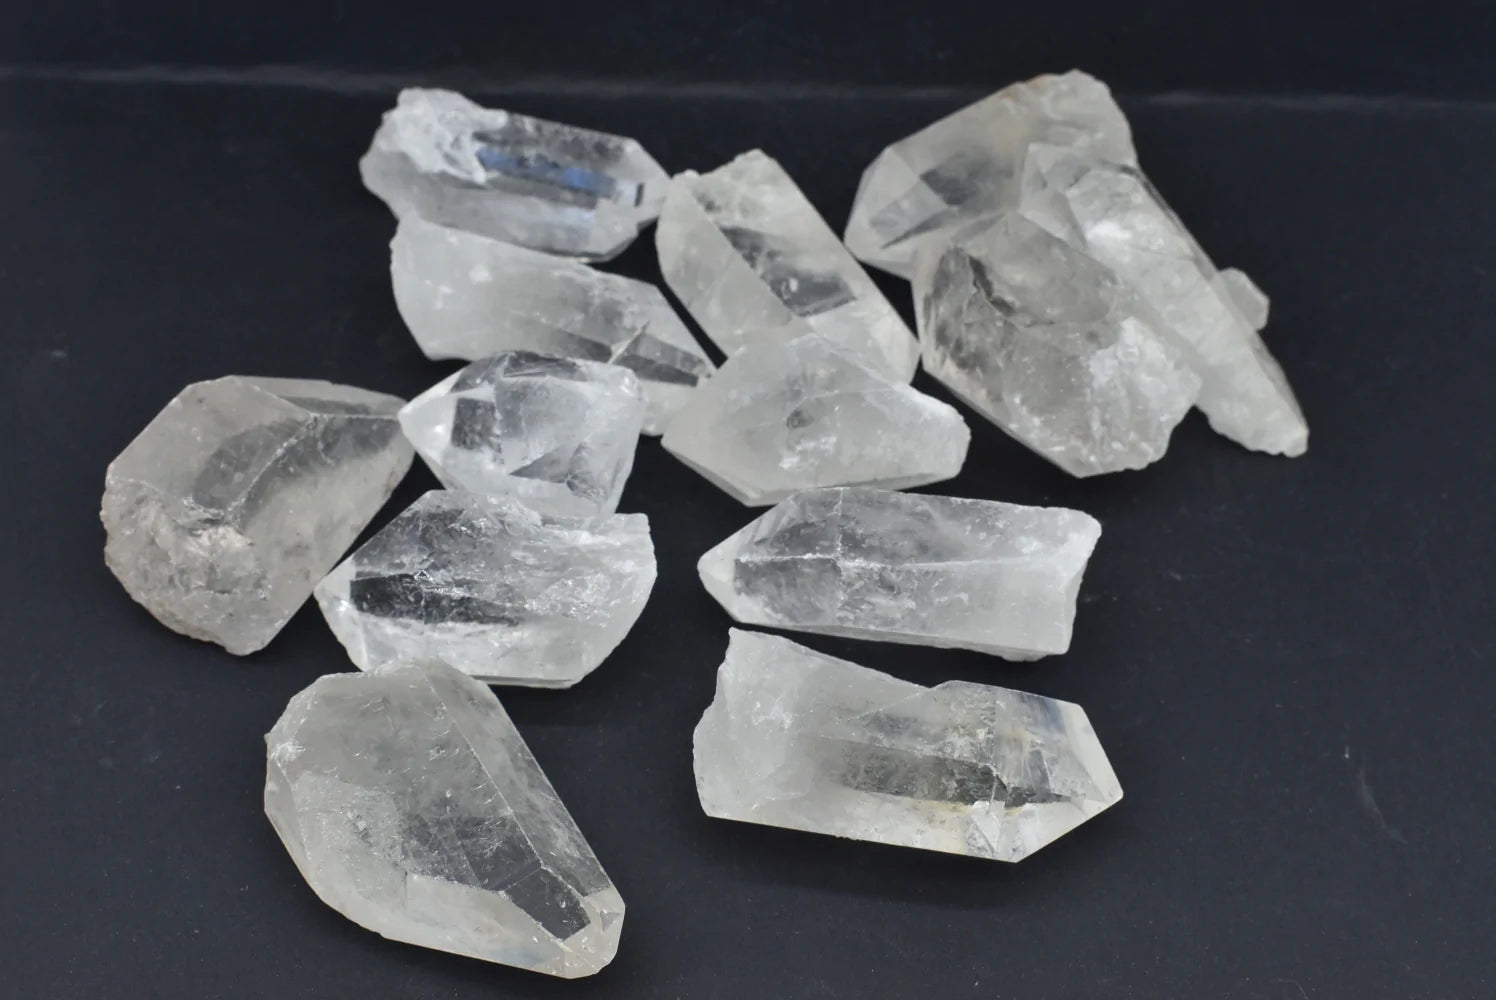 Cristallo di rocca o quarzo ialino: proprietà e usi del “cristallo